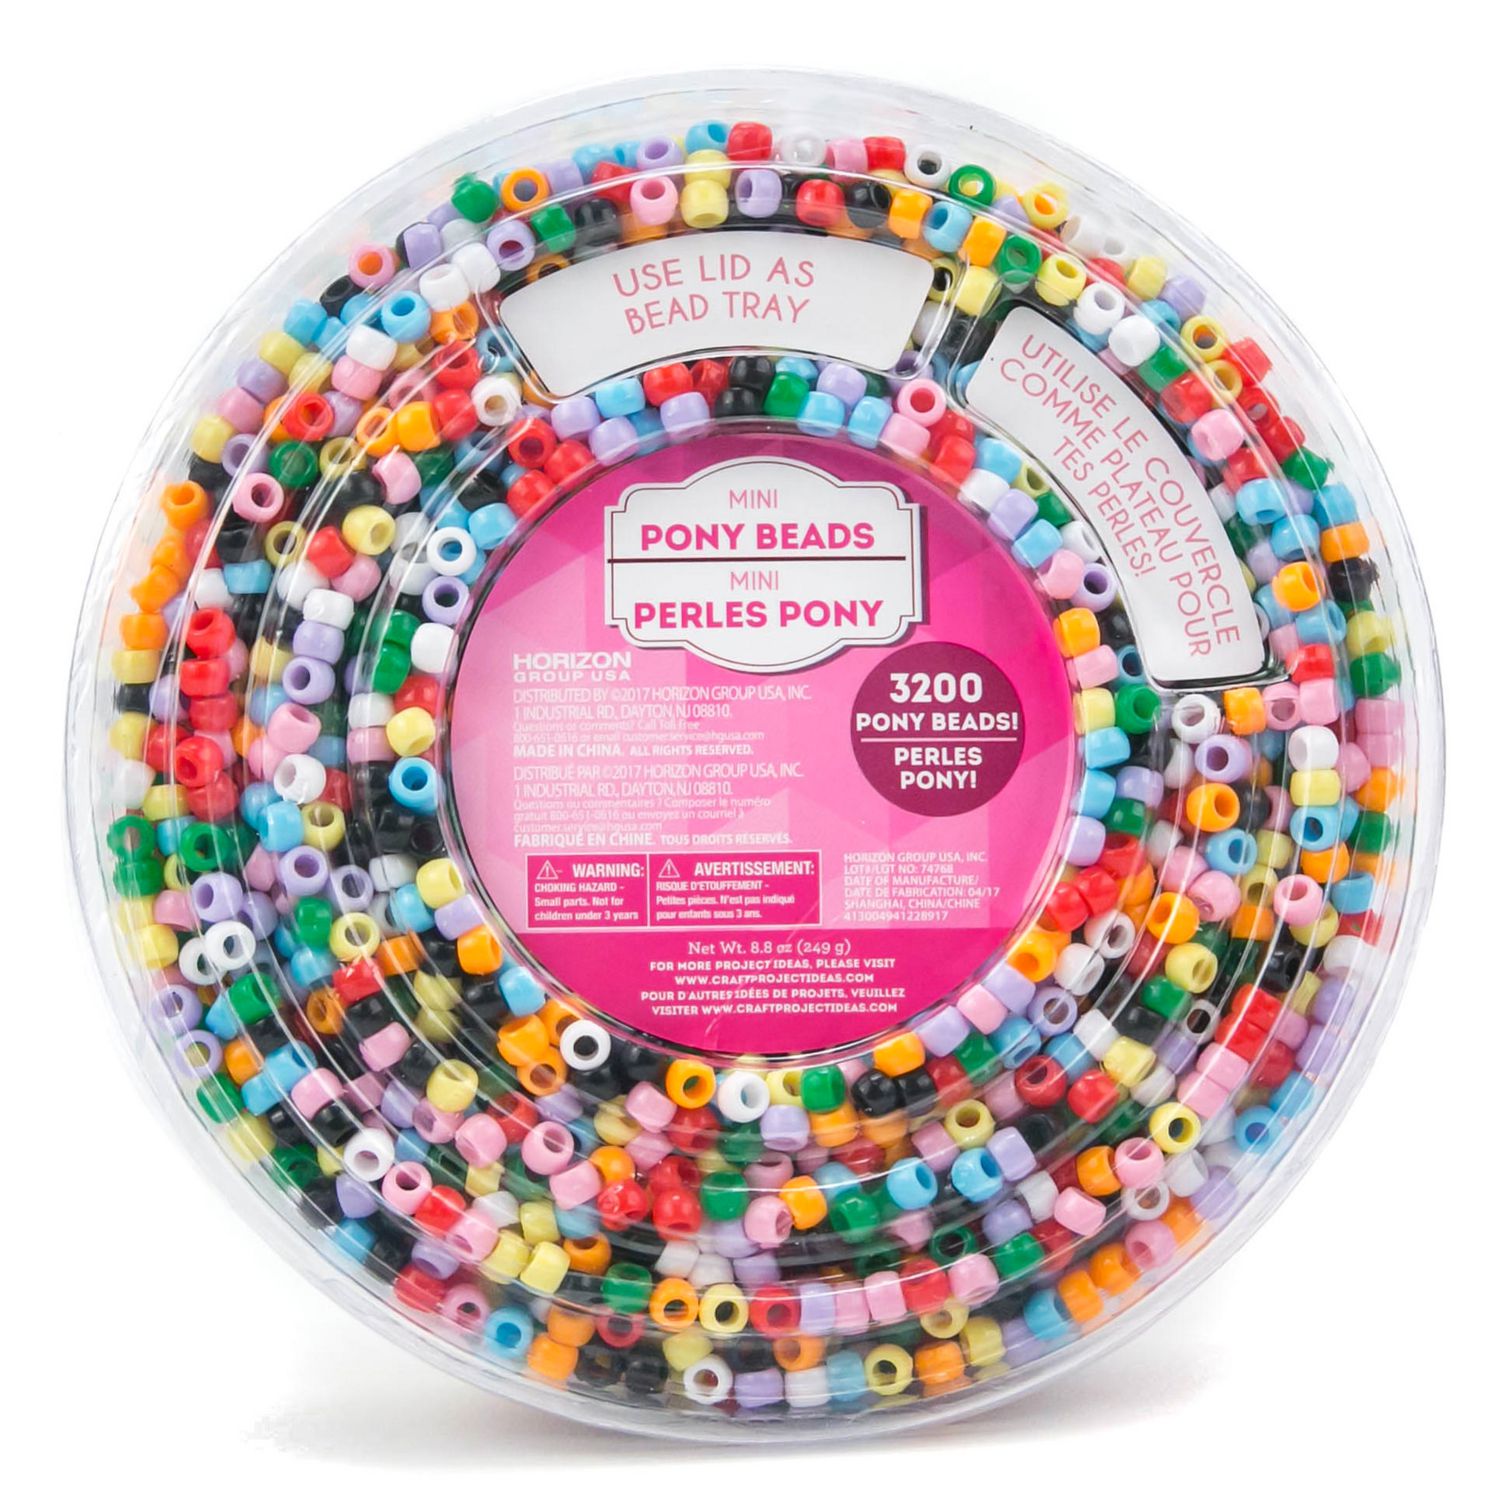 FUNNY HOUSE Mini Perles en Plastique de Verre 24000 pcs 2mm Perles Poney  Créatifs avec Boîte de Rangement Perles Plastique Transparent pour Enfants